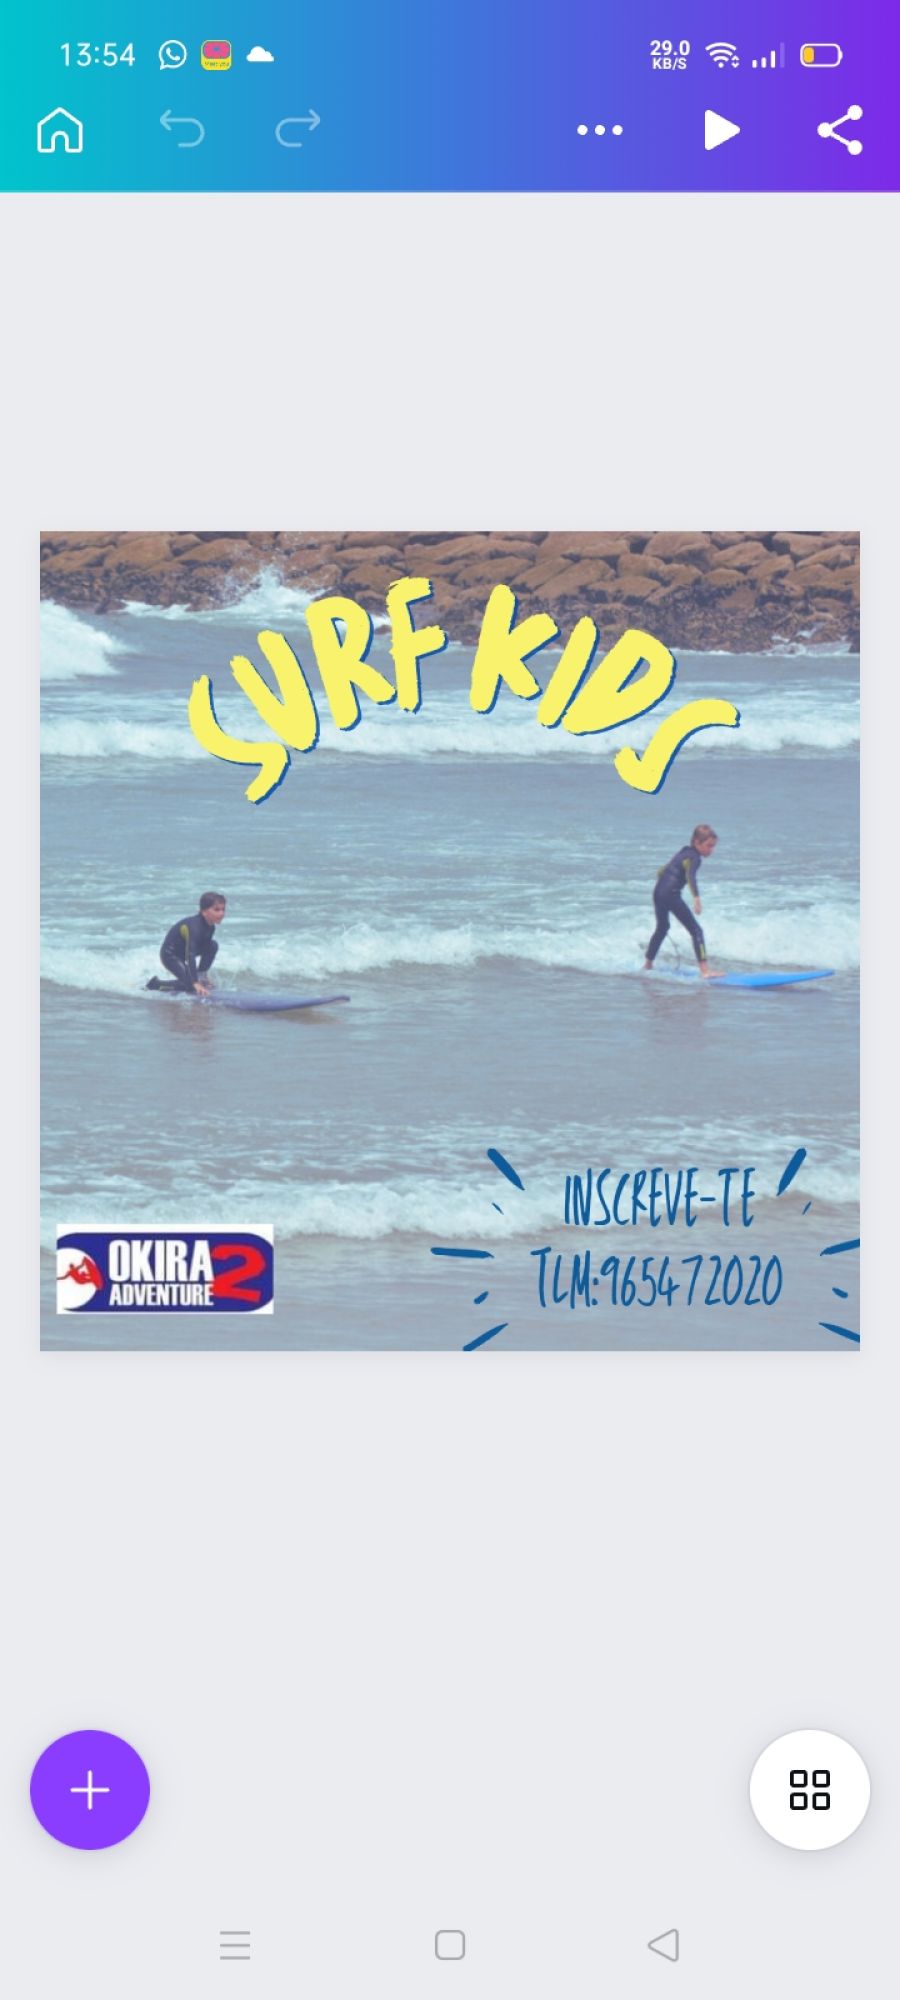 SURF KIDS